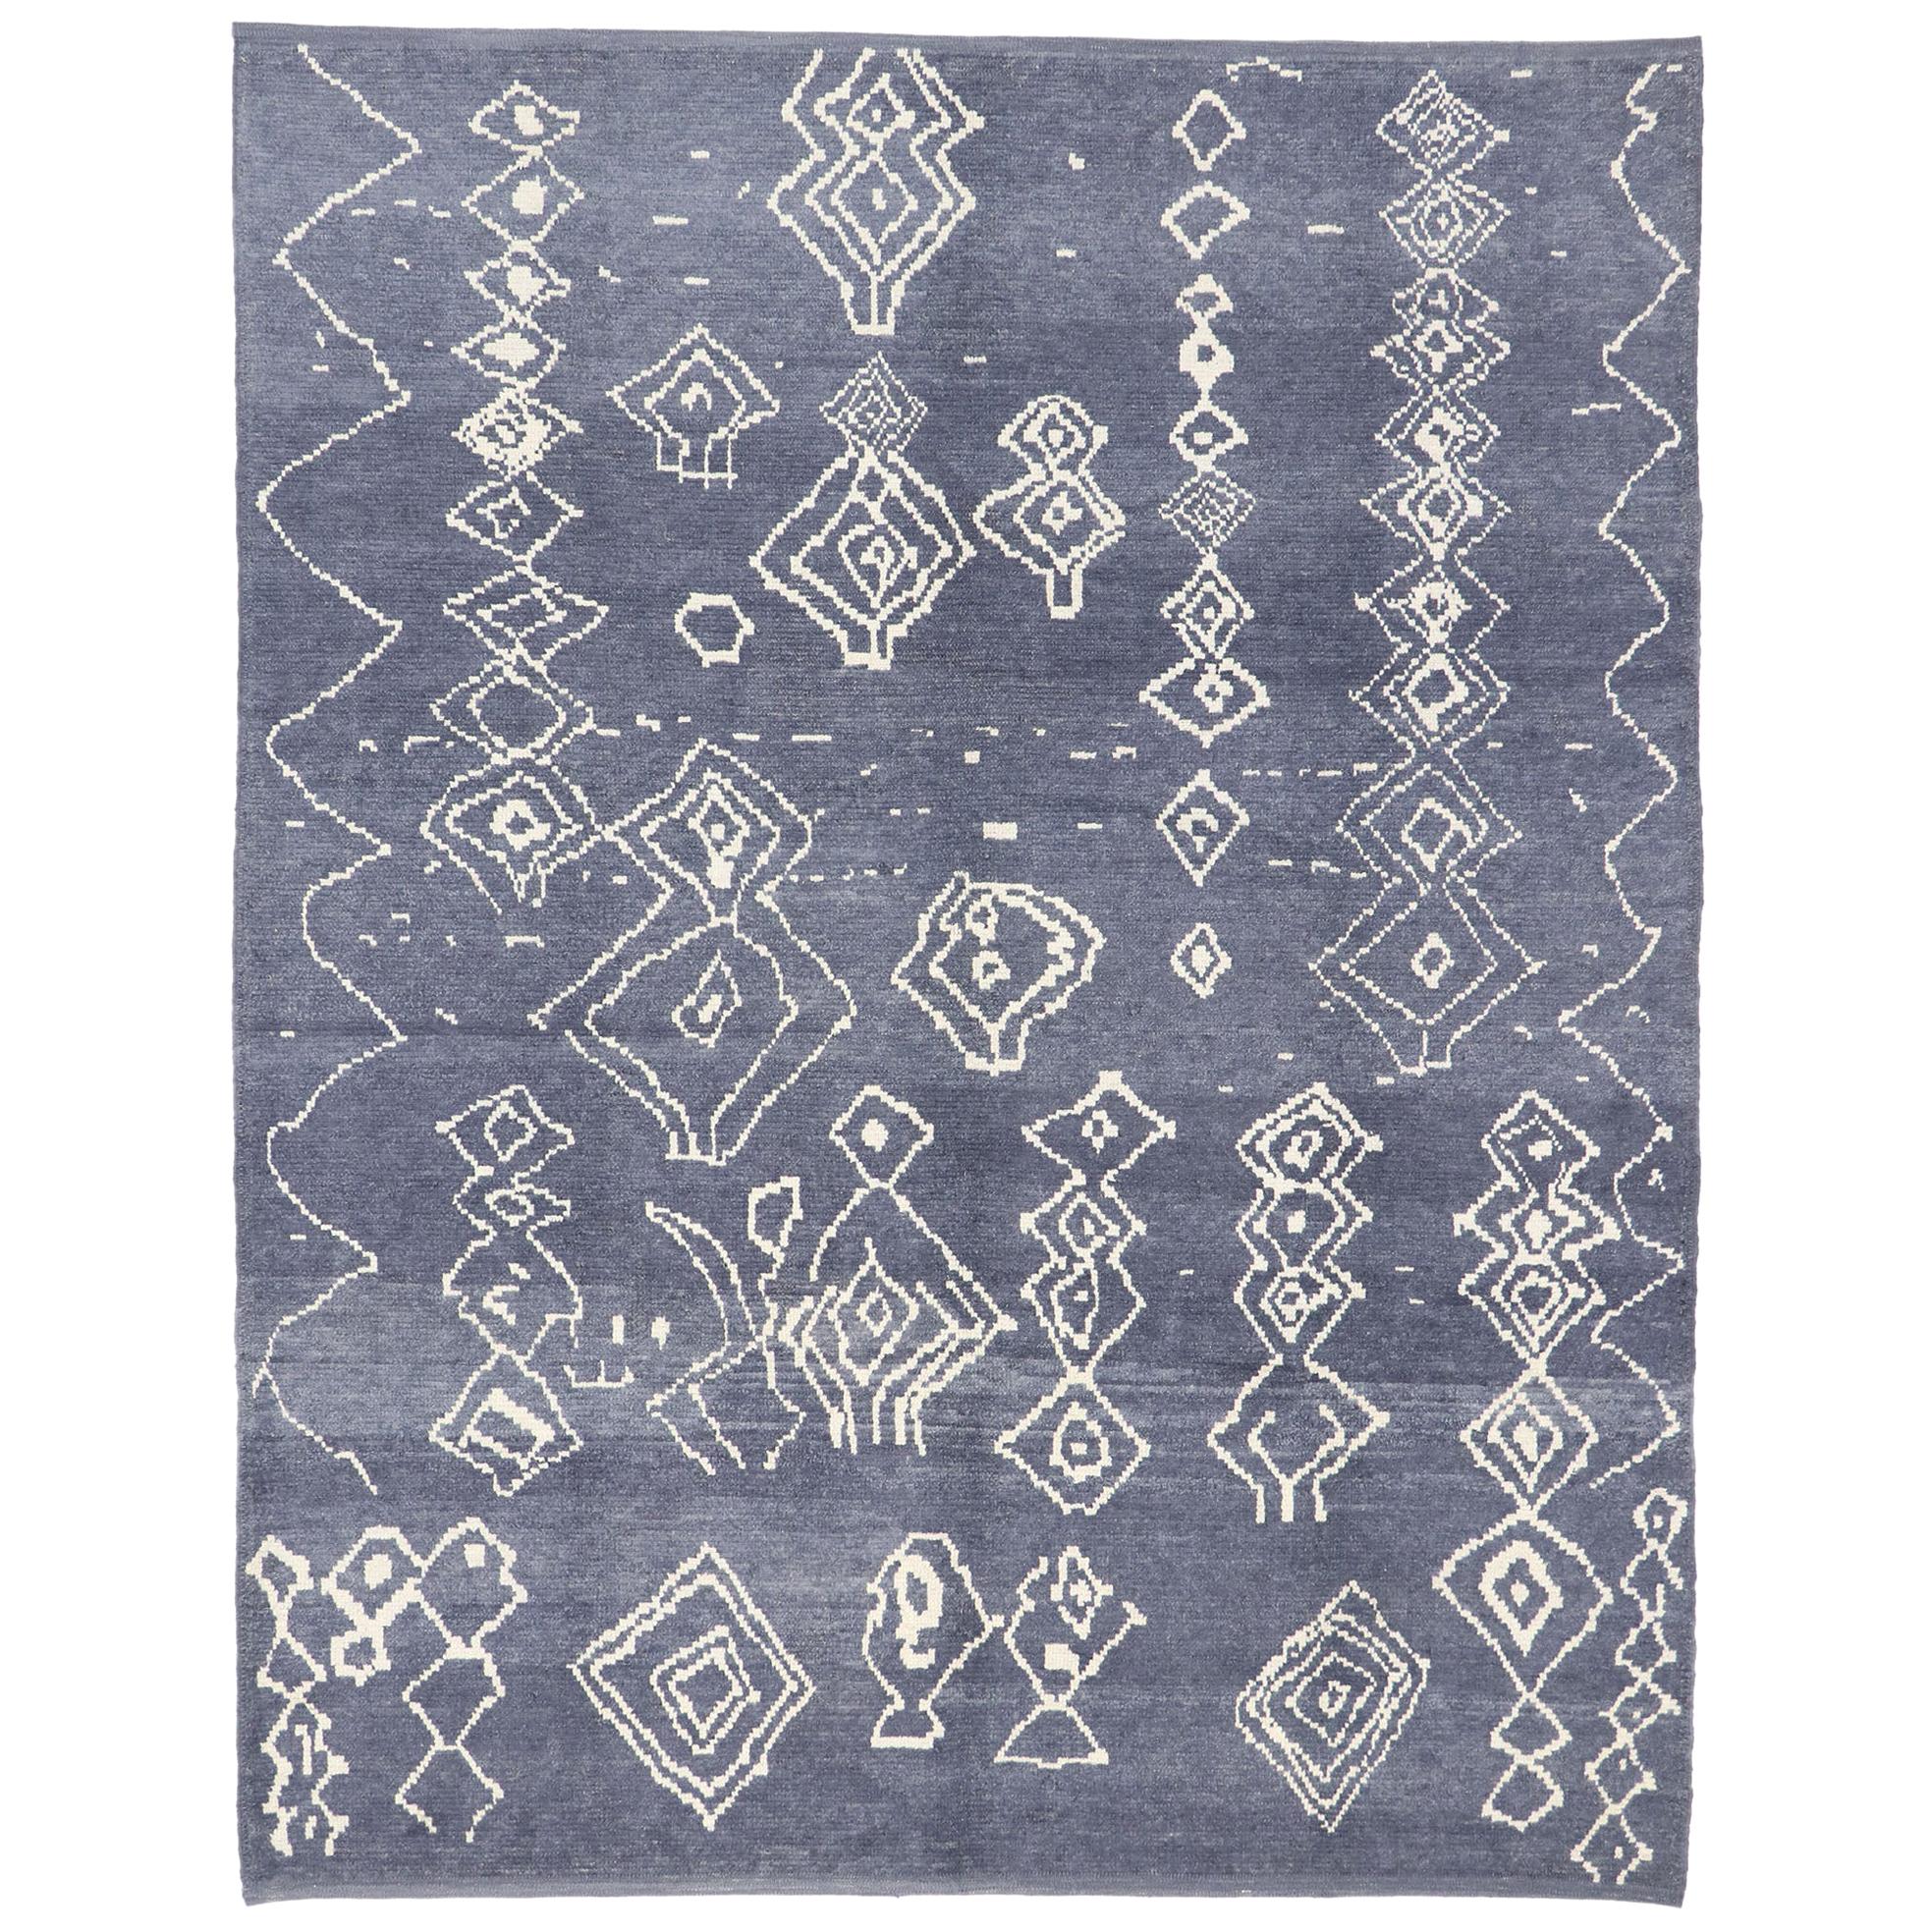 Zeitgenössischer zeitgenössischer Teppich im marokkanischen Stil mit Stammesmotiv